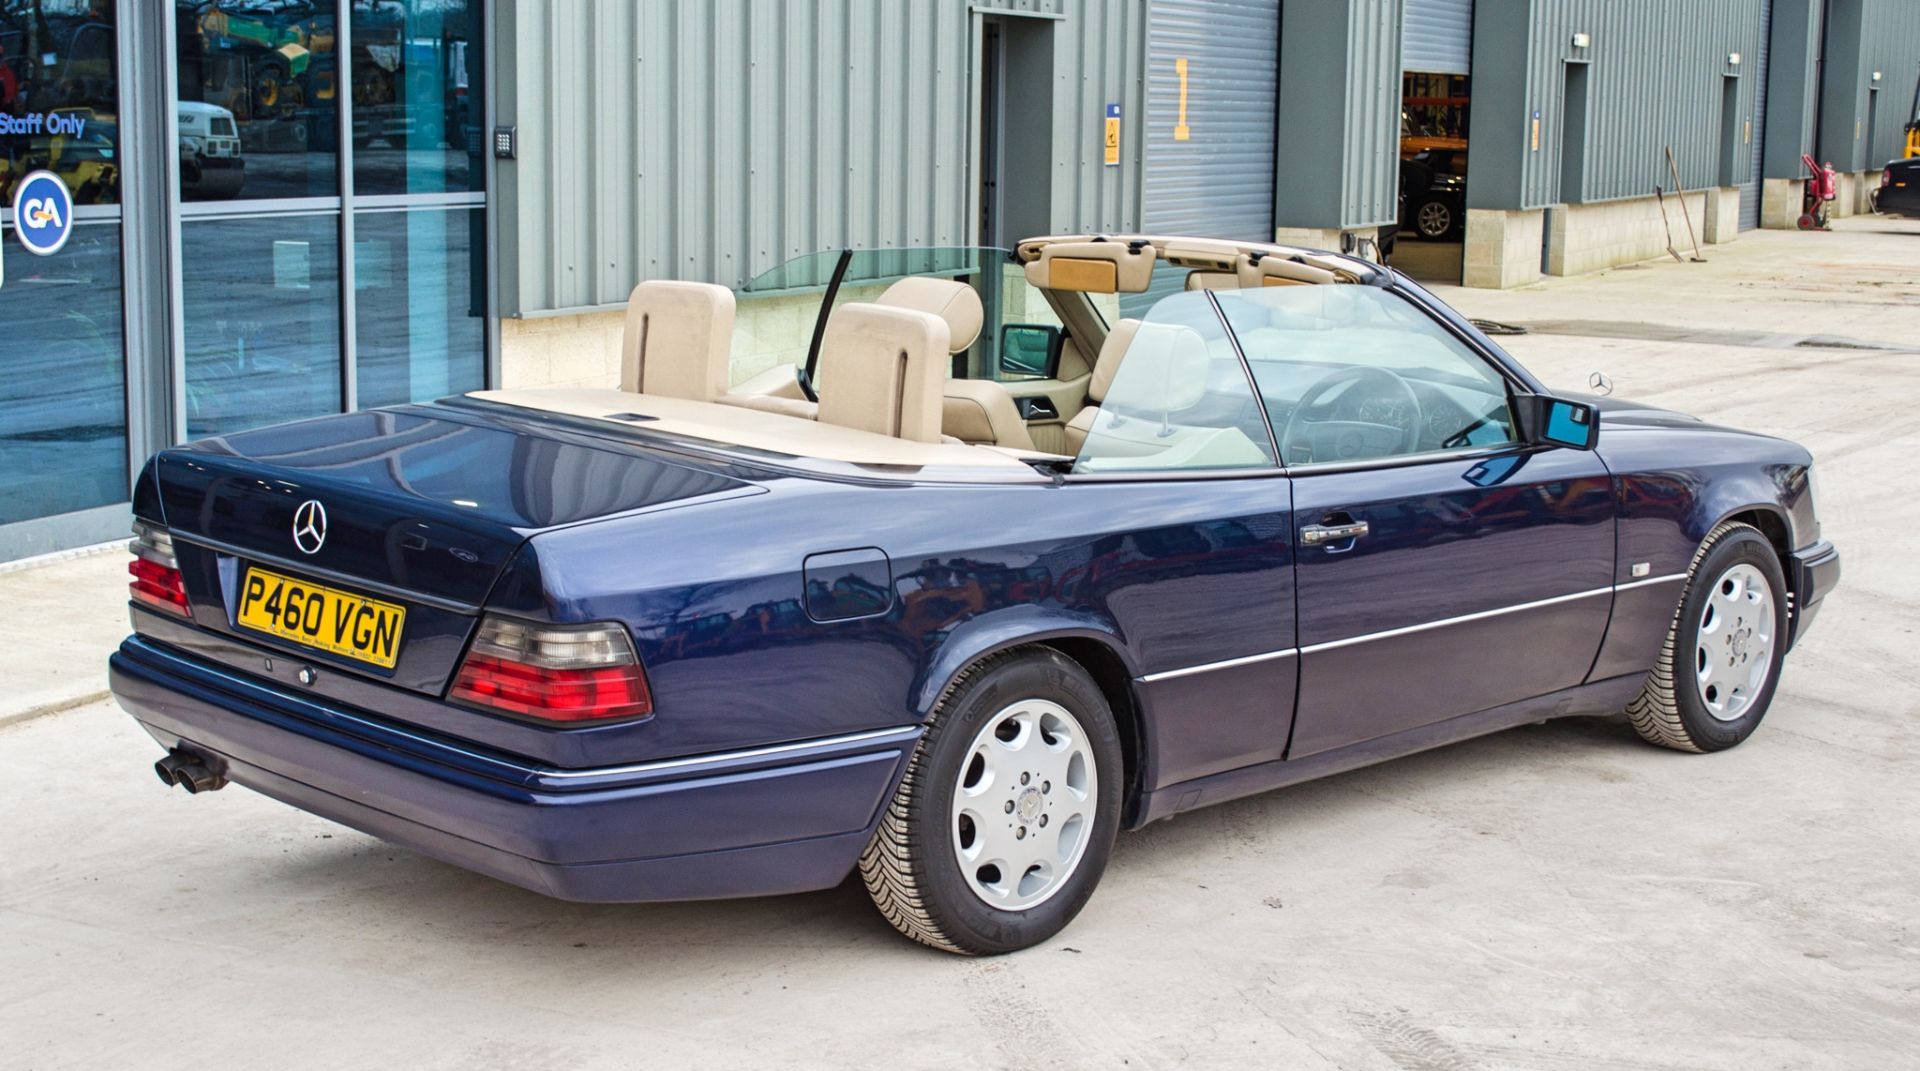 1997 Mercedes E220 2.2 litre 2 door cabriolet Registration: P460VGN Chassis: WDB1240622C292059 - Image 6 of 60